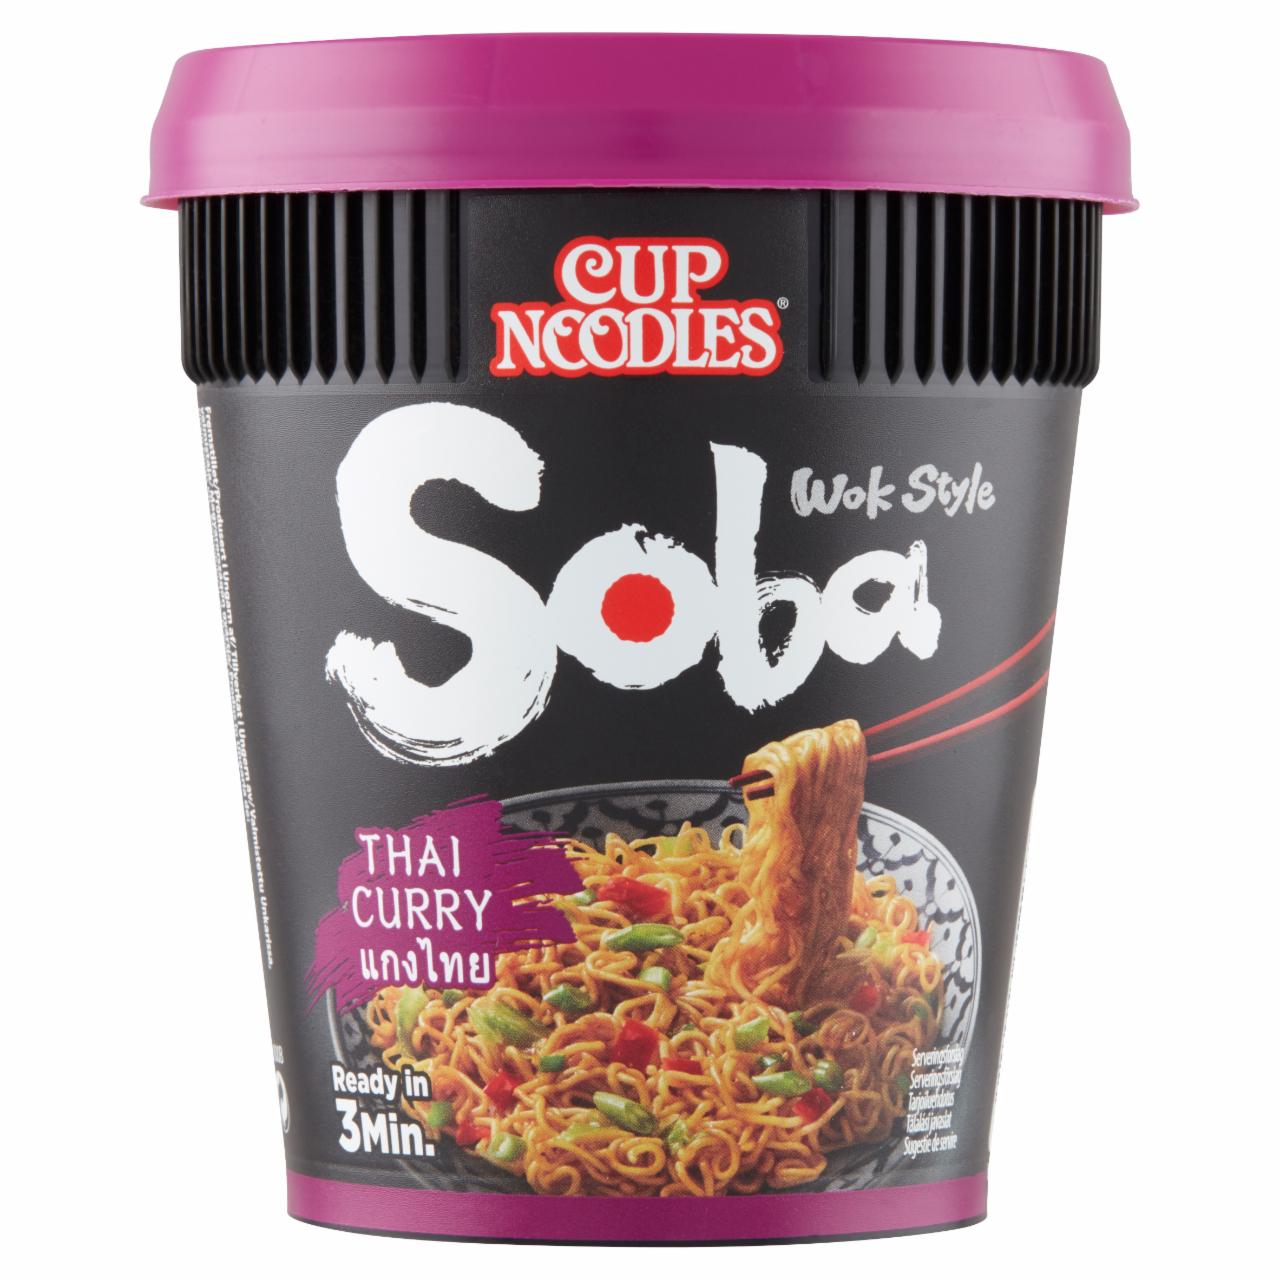 Képek - Nissin Cup Noodles Soba instant tészta búzalisztből thai jellegű curry ízesítő szósszal 87 g